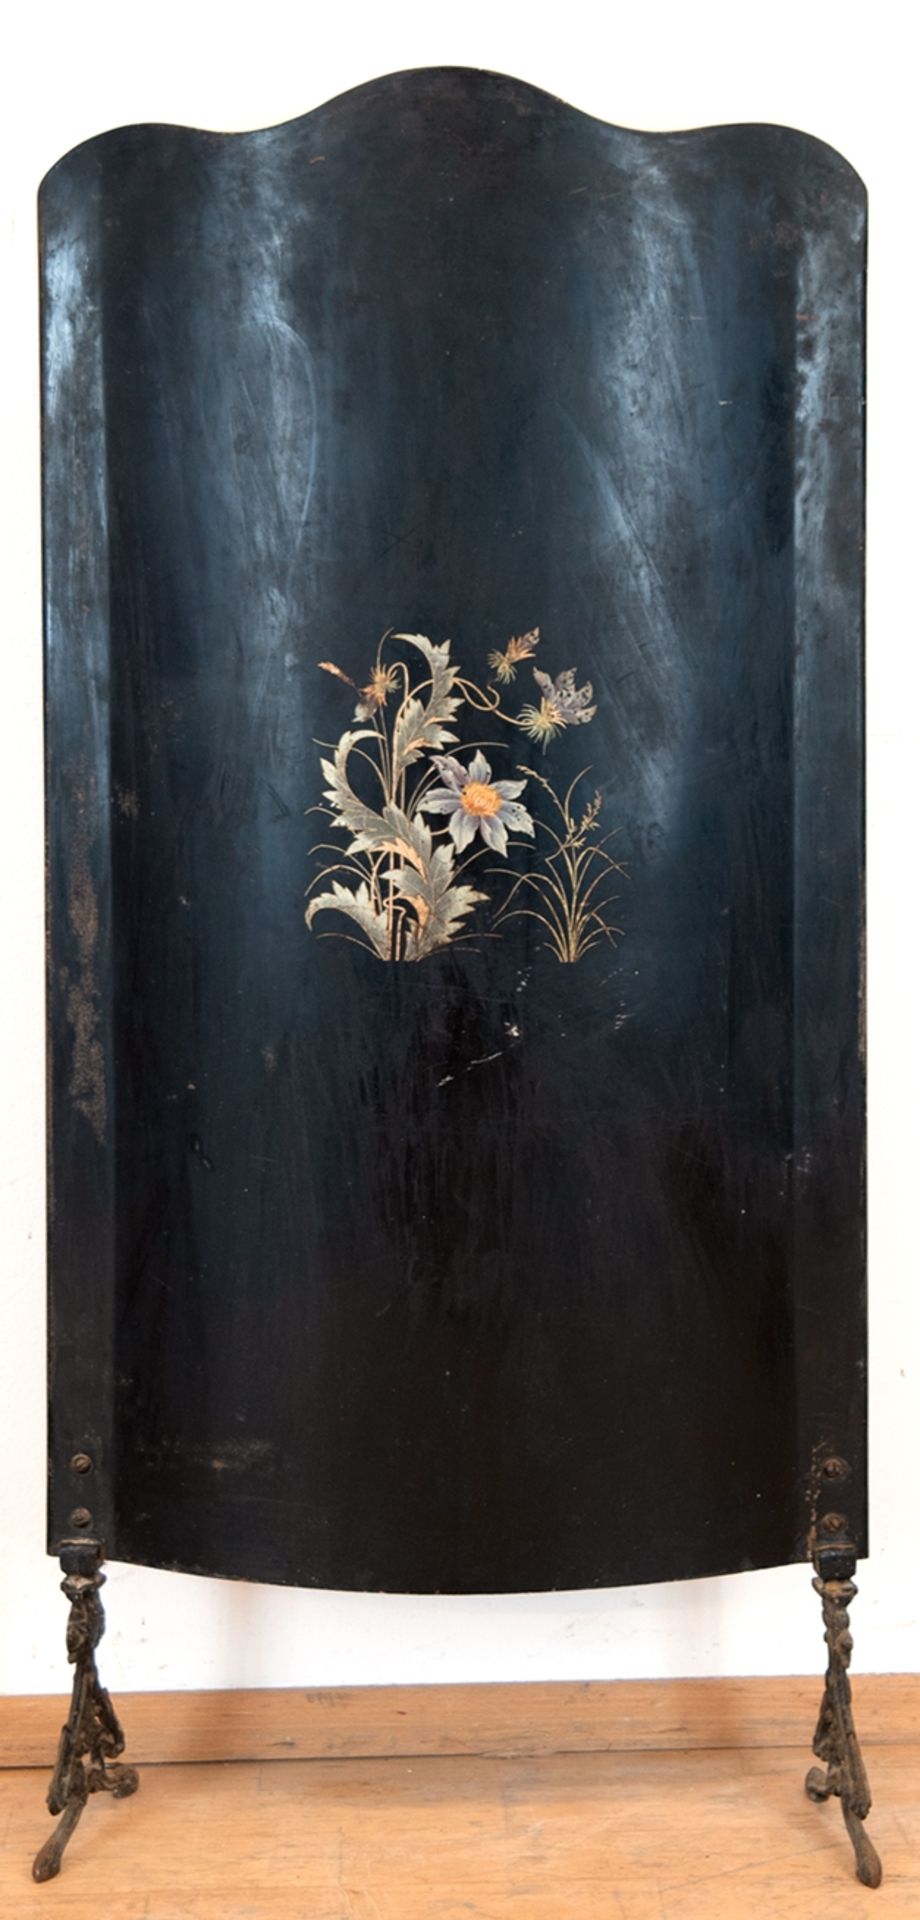 Ofenschirm, um 1900, schwarz gefaßt mit Blumendekor, auf durchbrochenen Beinen, Gebrauchspuren, 109